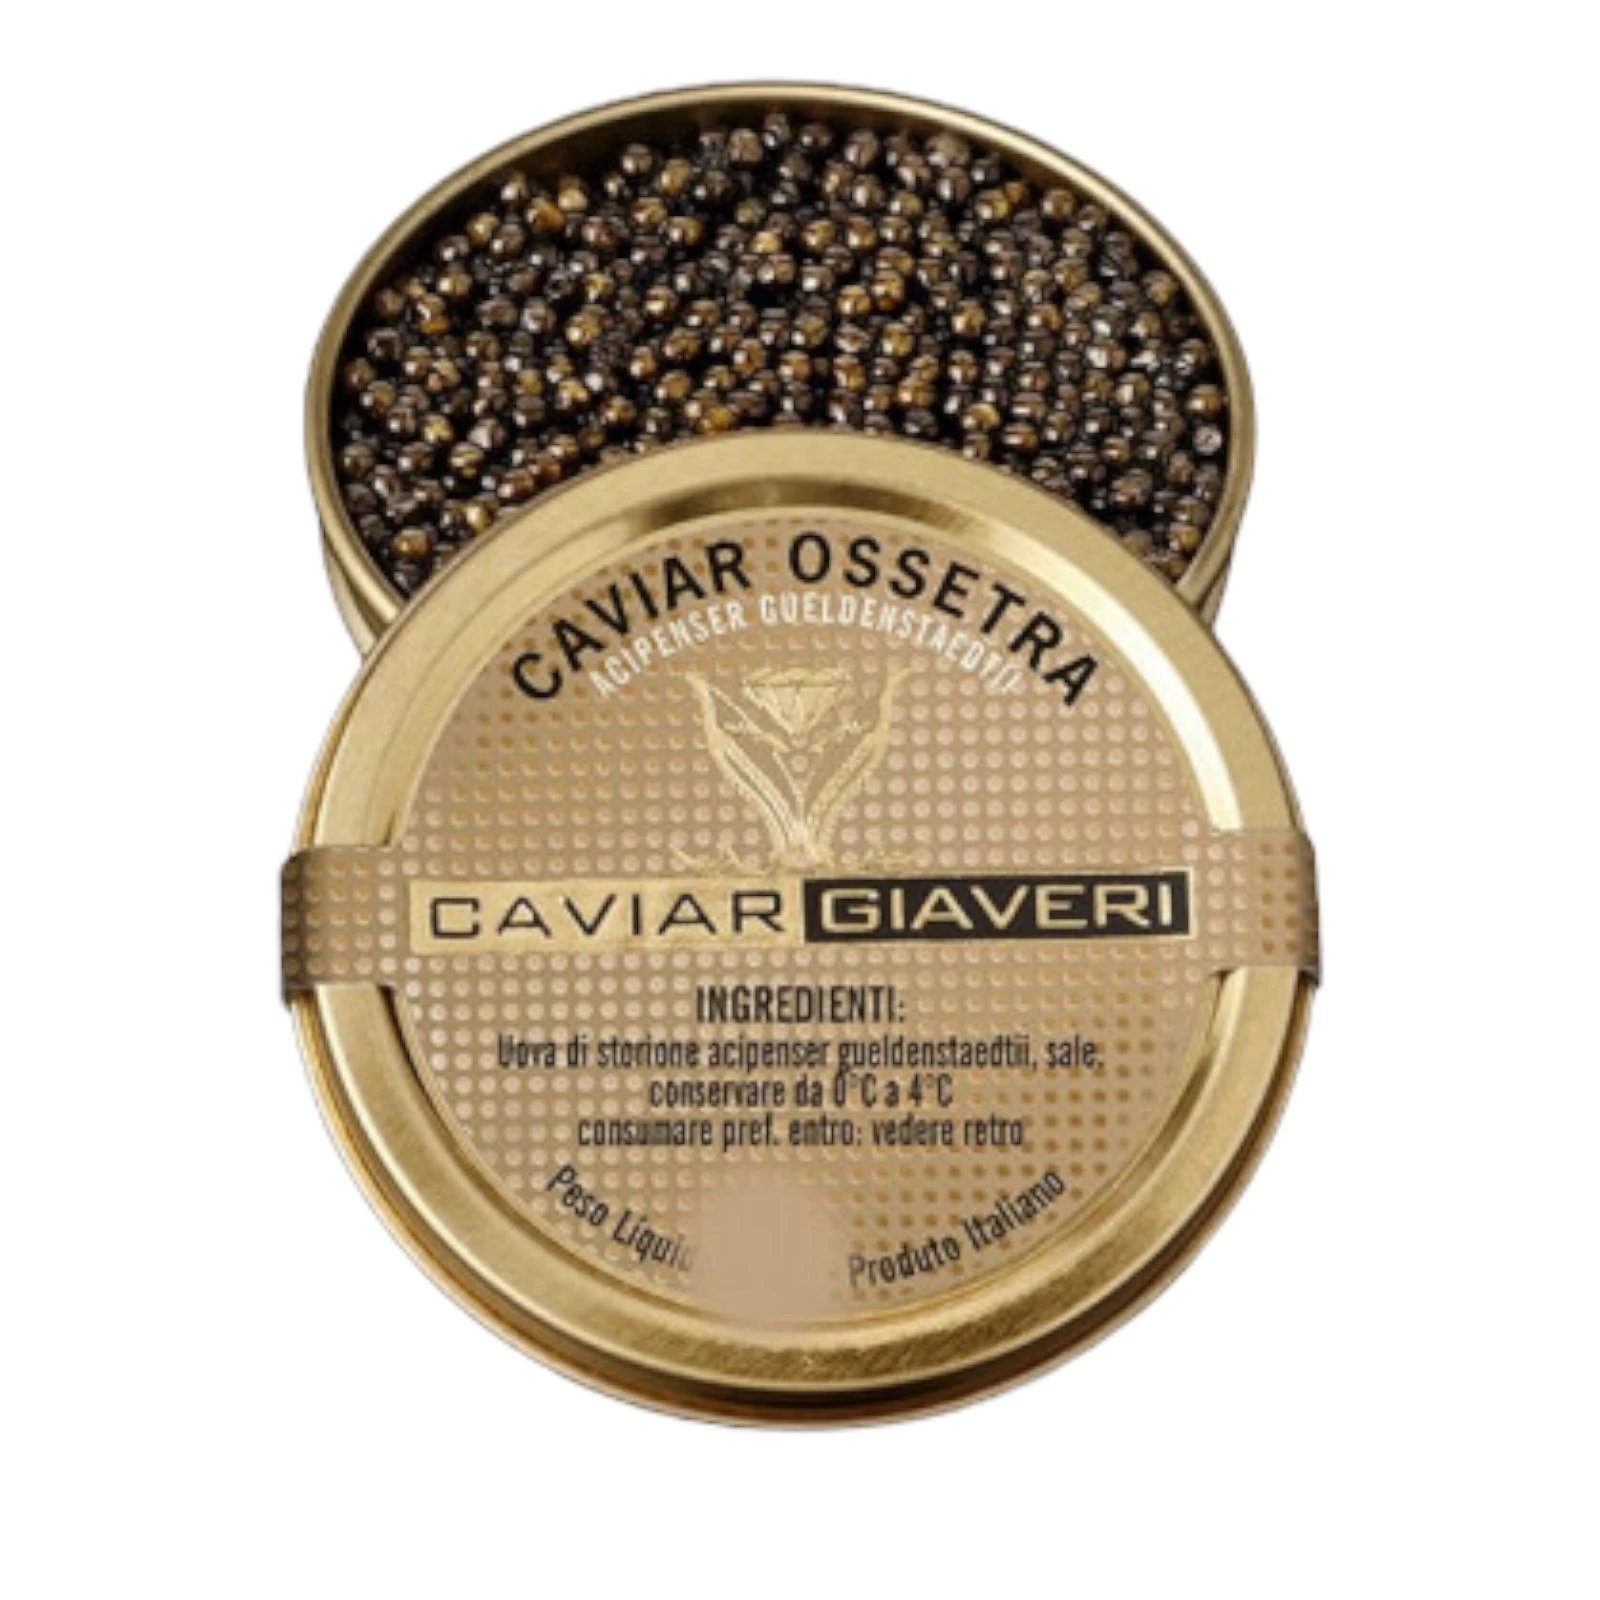 Caviar Giaveri Ossetra 100g